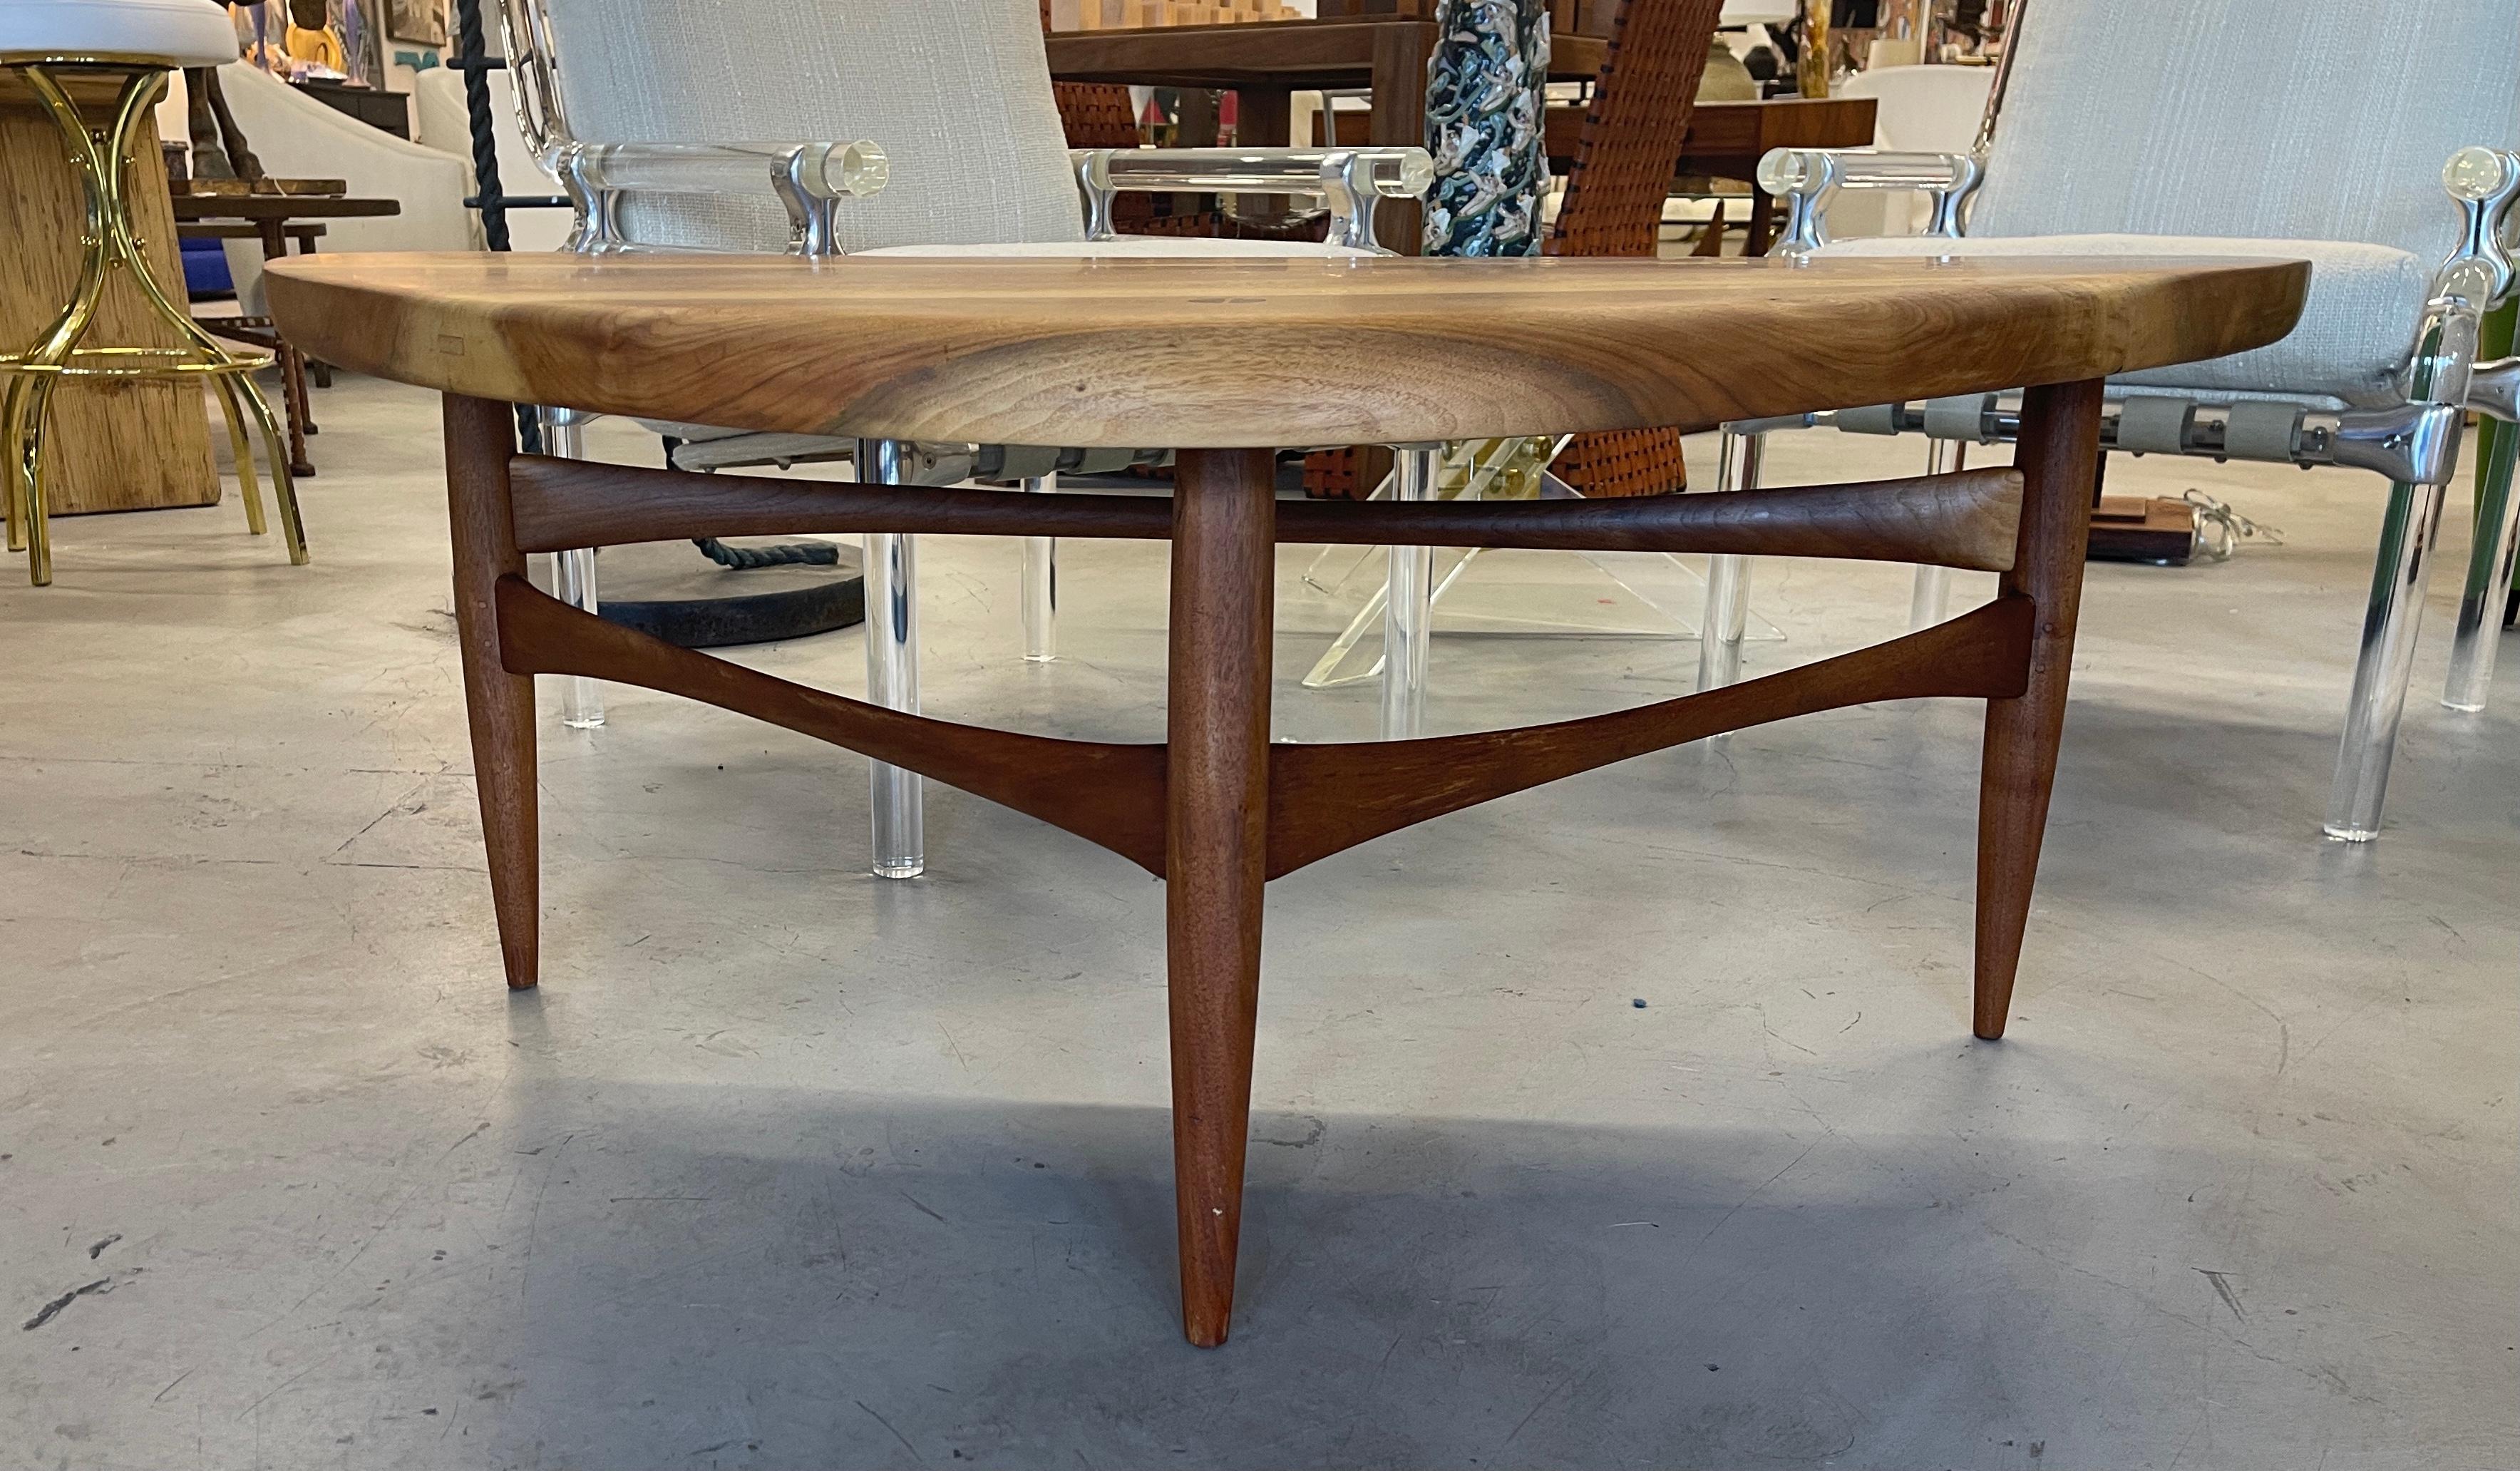 Superbe table à cocktail en bois exotique scandinave en forme de manche de guitare. Magnifiquement fabriqué avec des détails en tenon et mortaise et des pieds goupillés. Je ne suis pas sûr de la nature du bois, mais c'est une couleur magnifique.